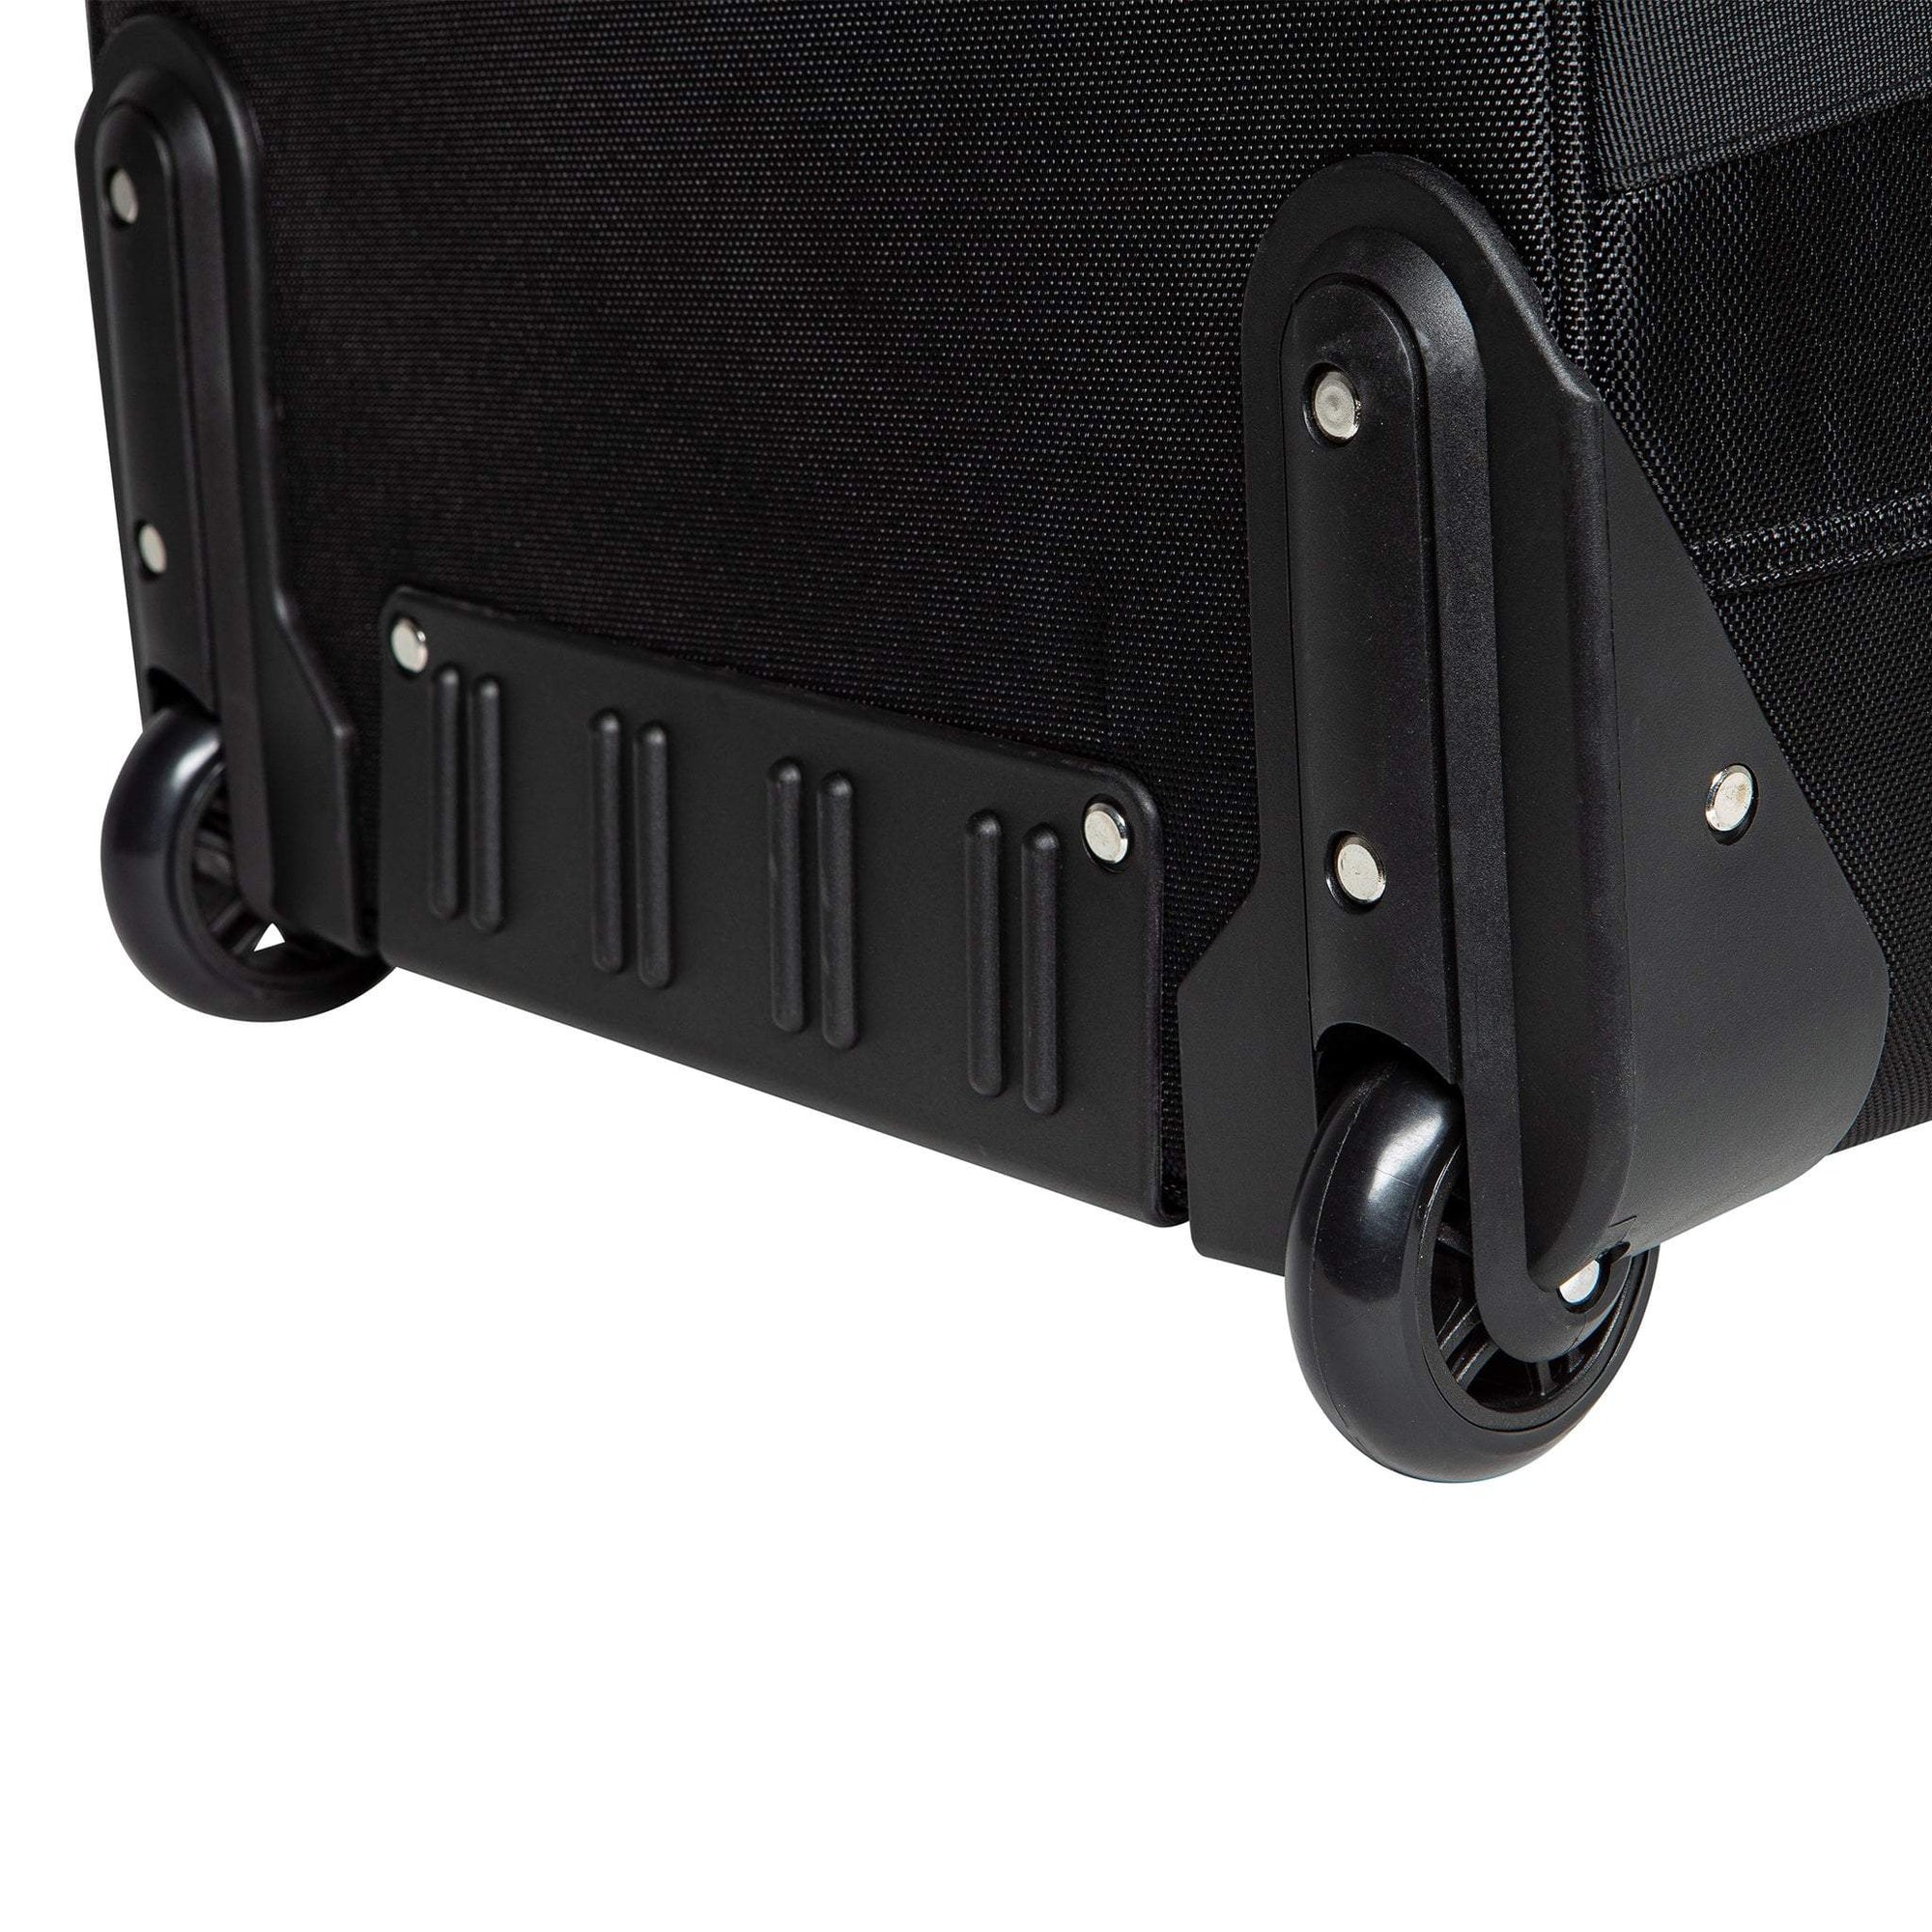 Strobepro Ultimate Wheeled Kit Bag - Medium